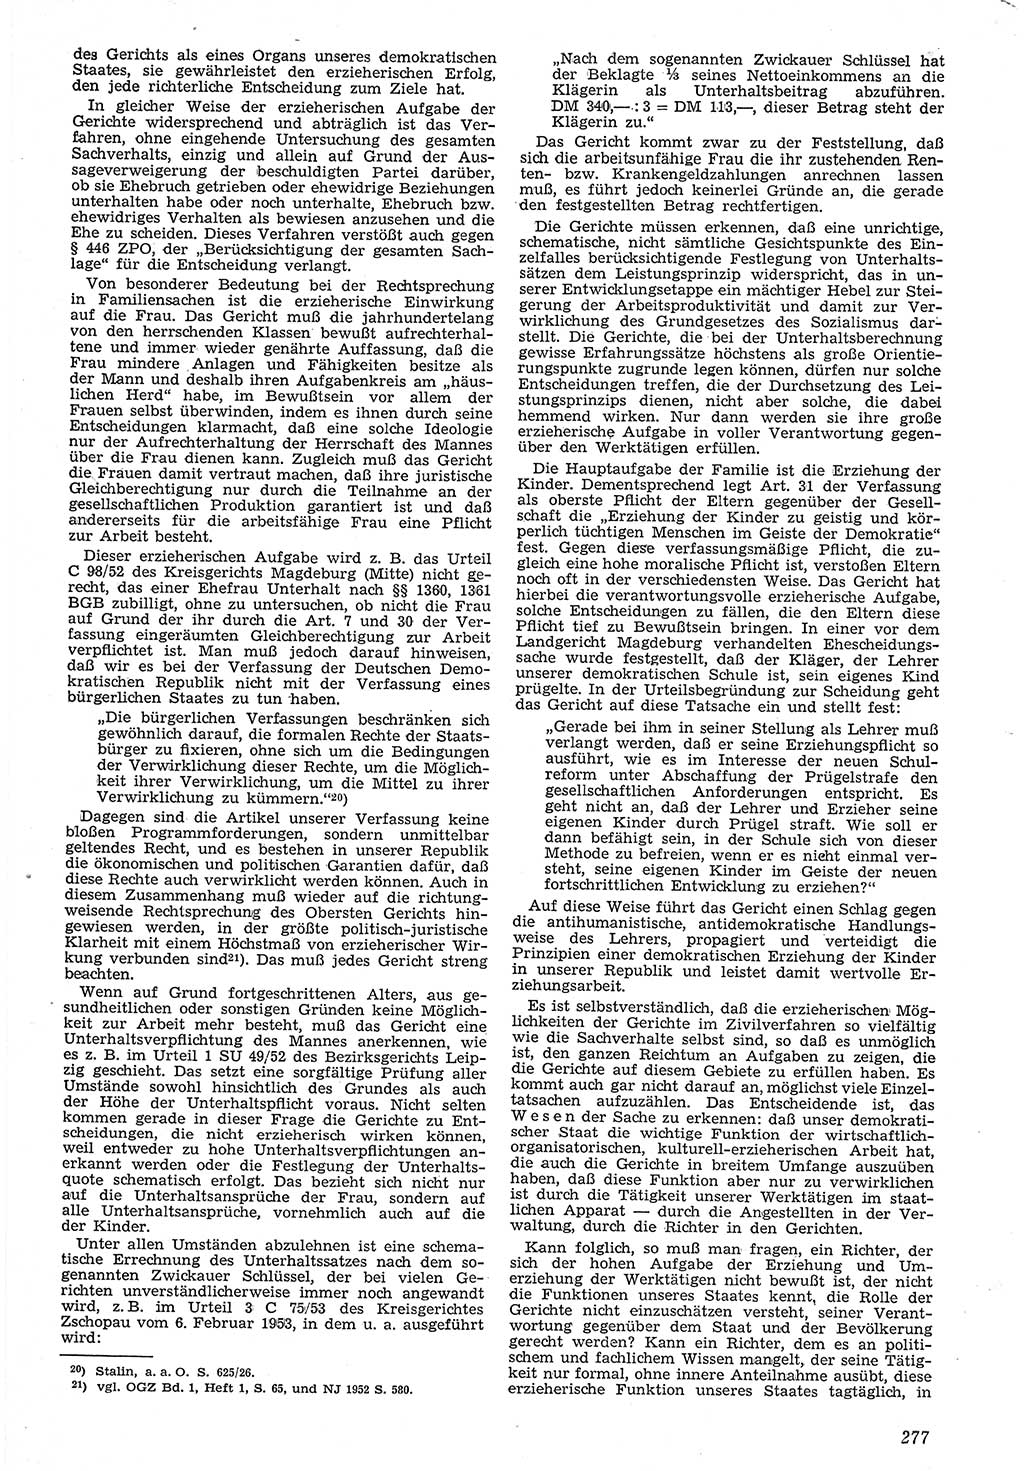 Neue Justiz (NJ), Zeitschrift für Recht und Rechtswissenschaft [Deutsche Demokratische Republik (DDR)], 7. Jahrgang 1953, Seite 277 (NJ DDR 1953, S. 277)